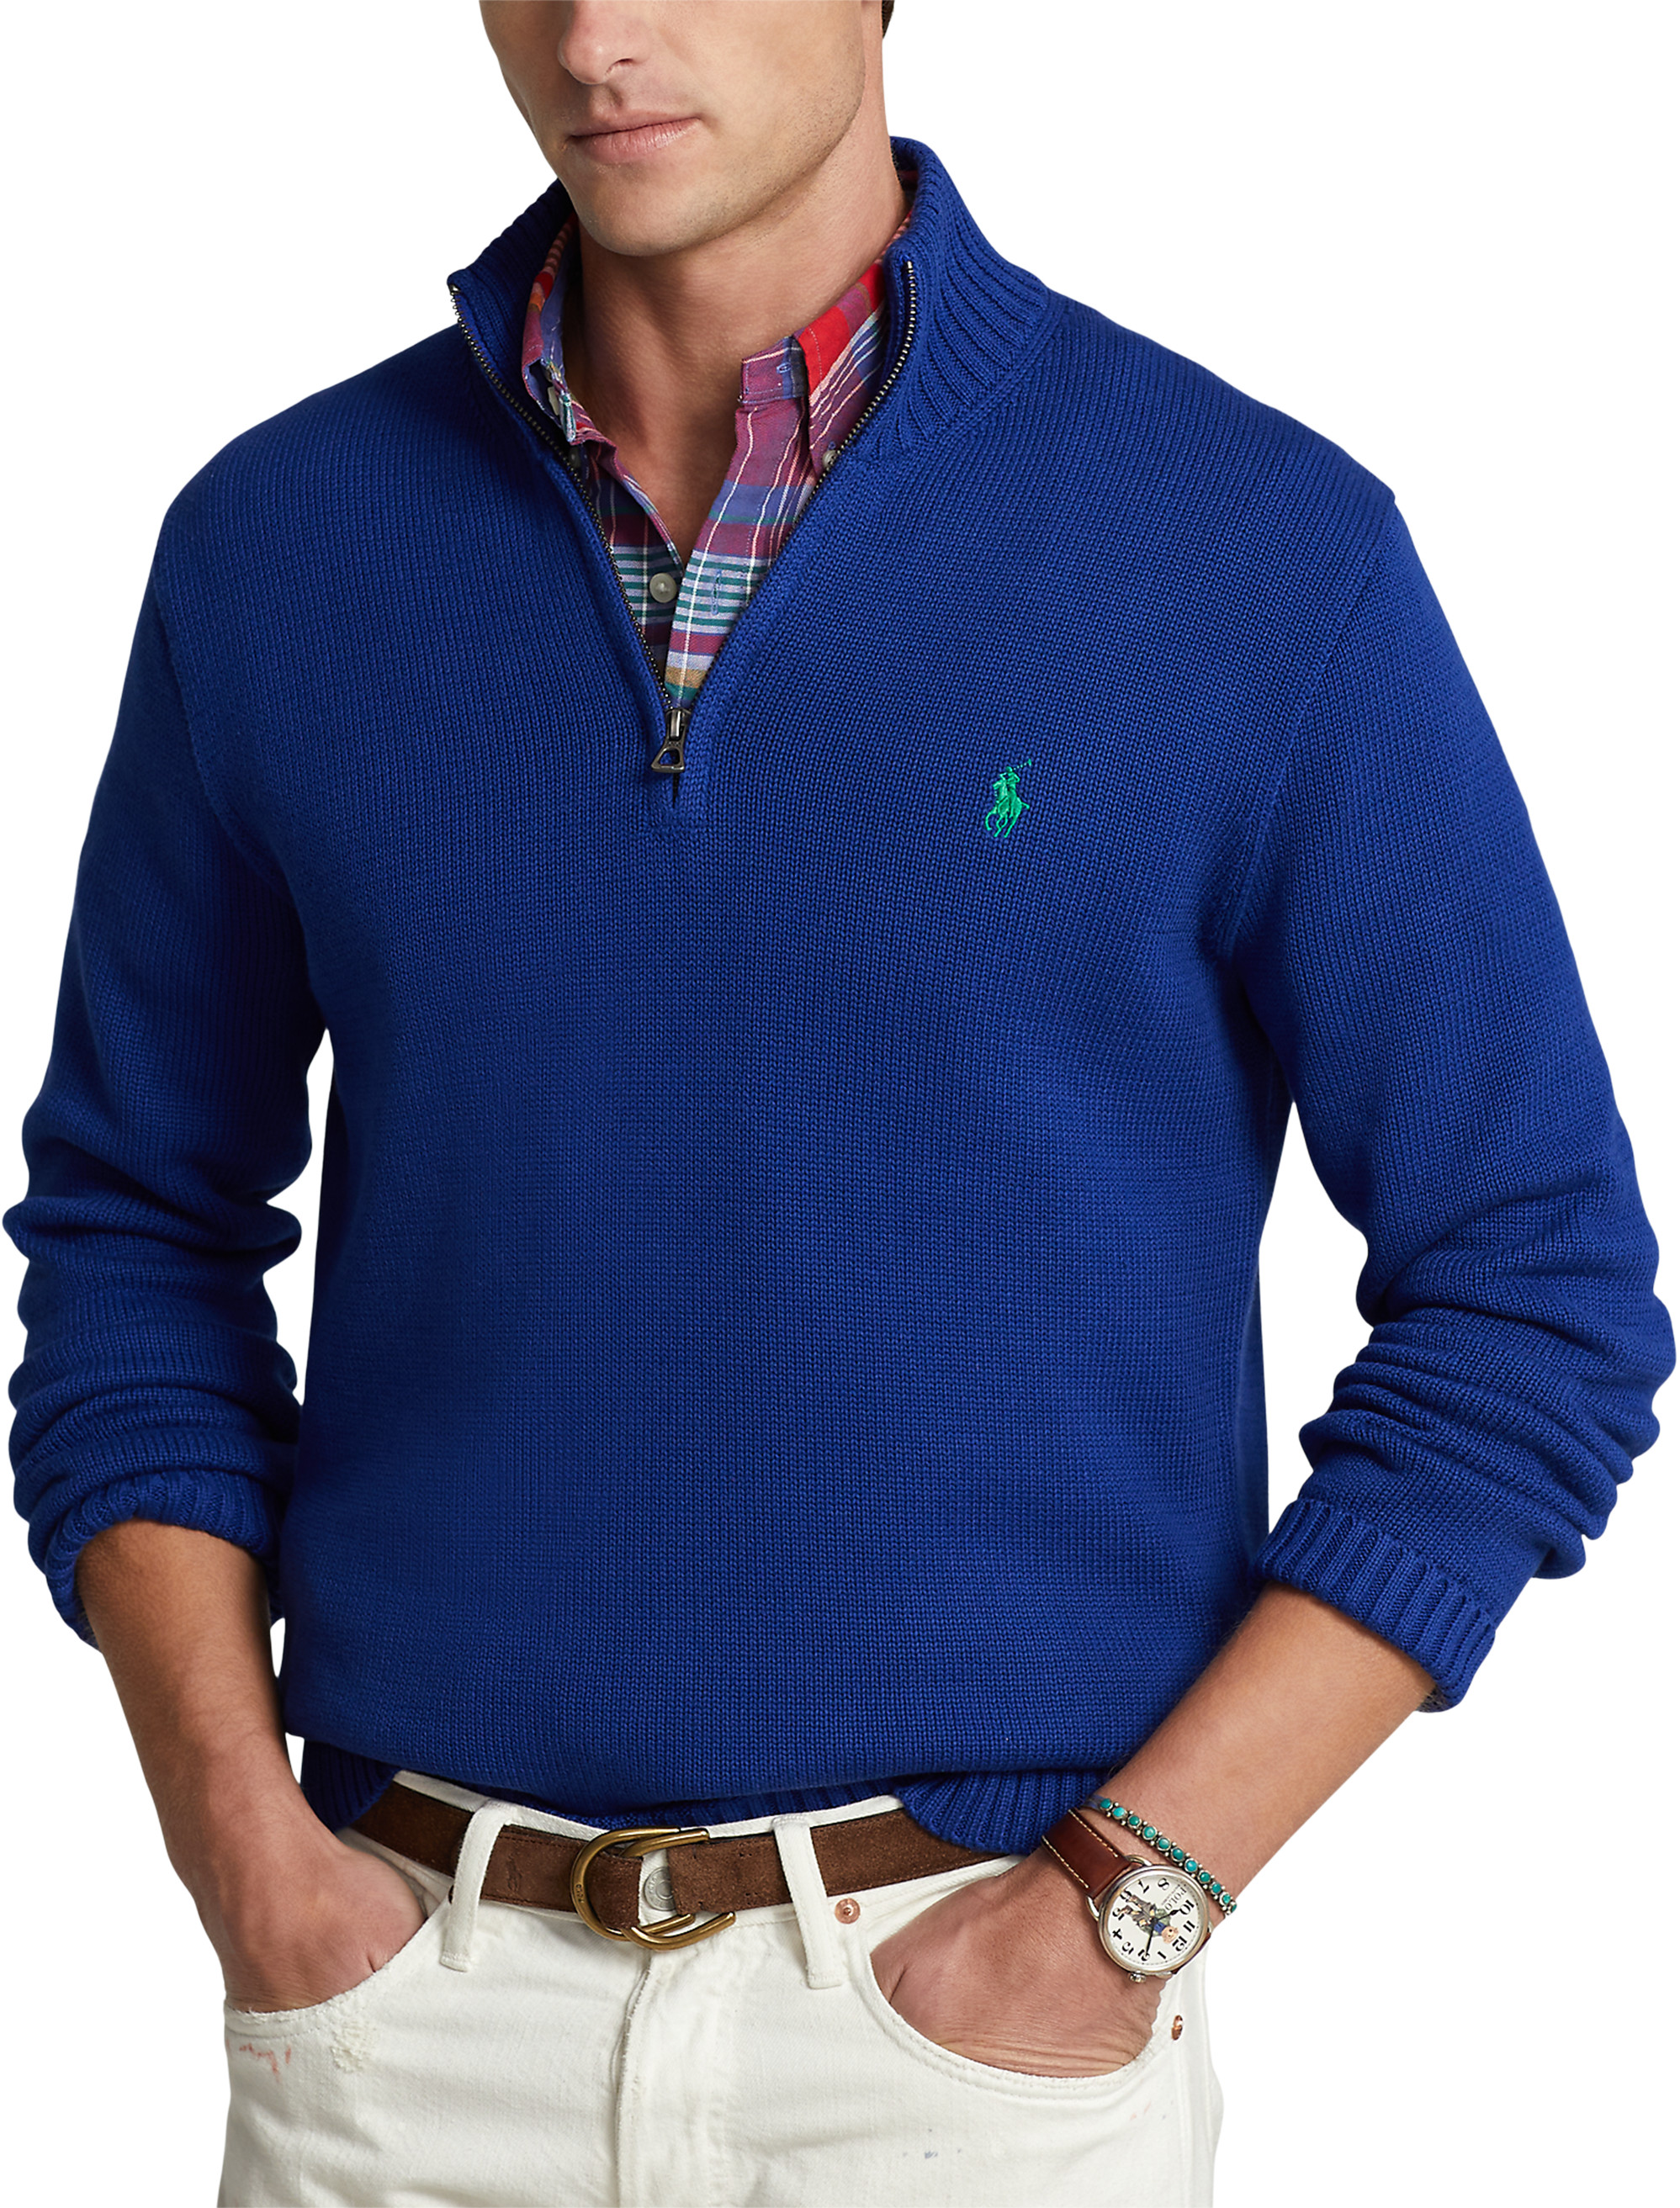 Big + Tall | Polo Ralph Lauren 1/4-Zip Sweater | DXL